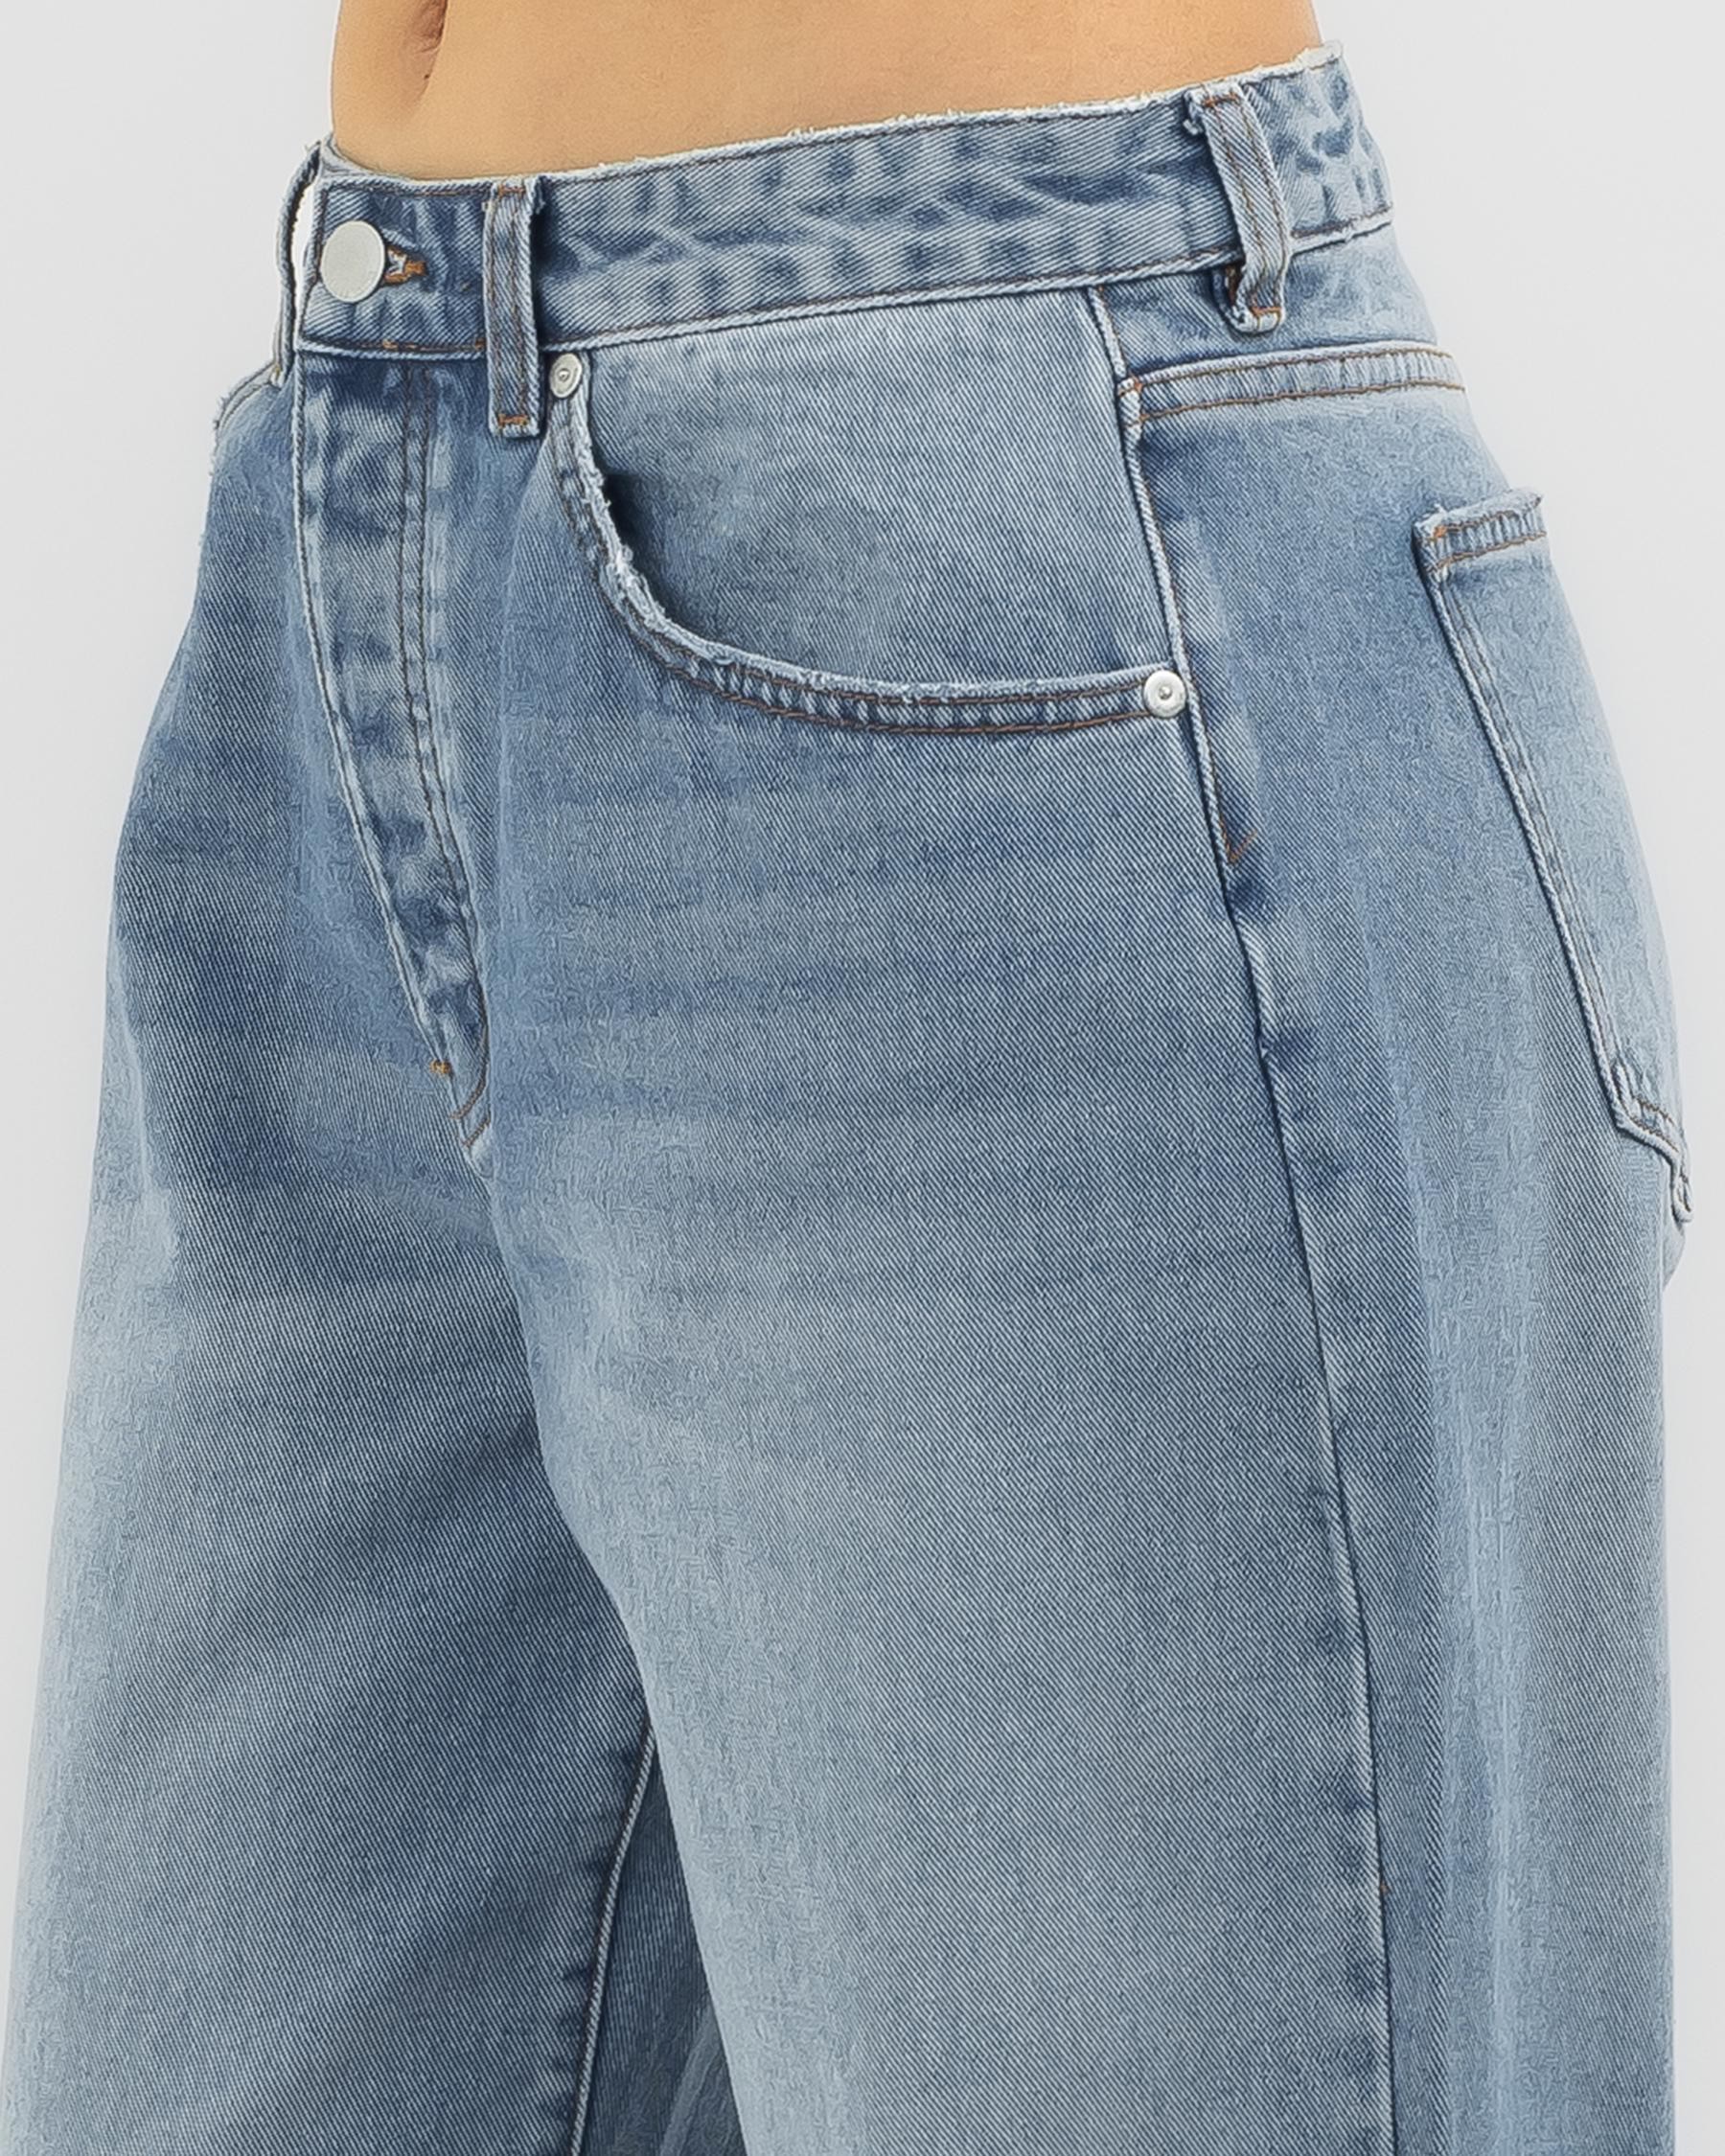 Shop Billabong Rachel Low Waist Jeans In Medium Indigo Fade - Fast ...